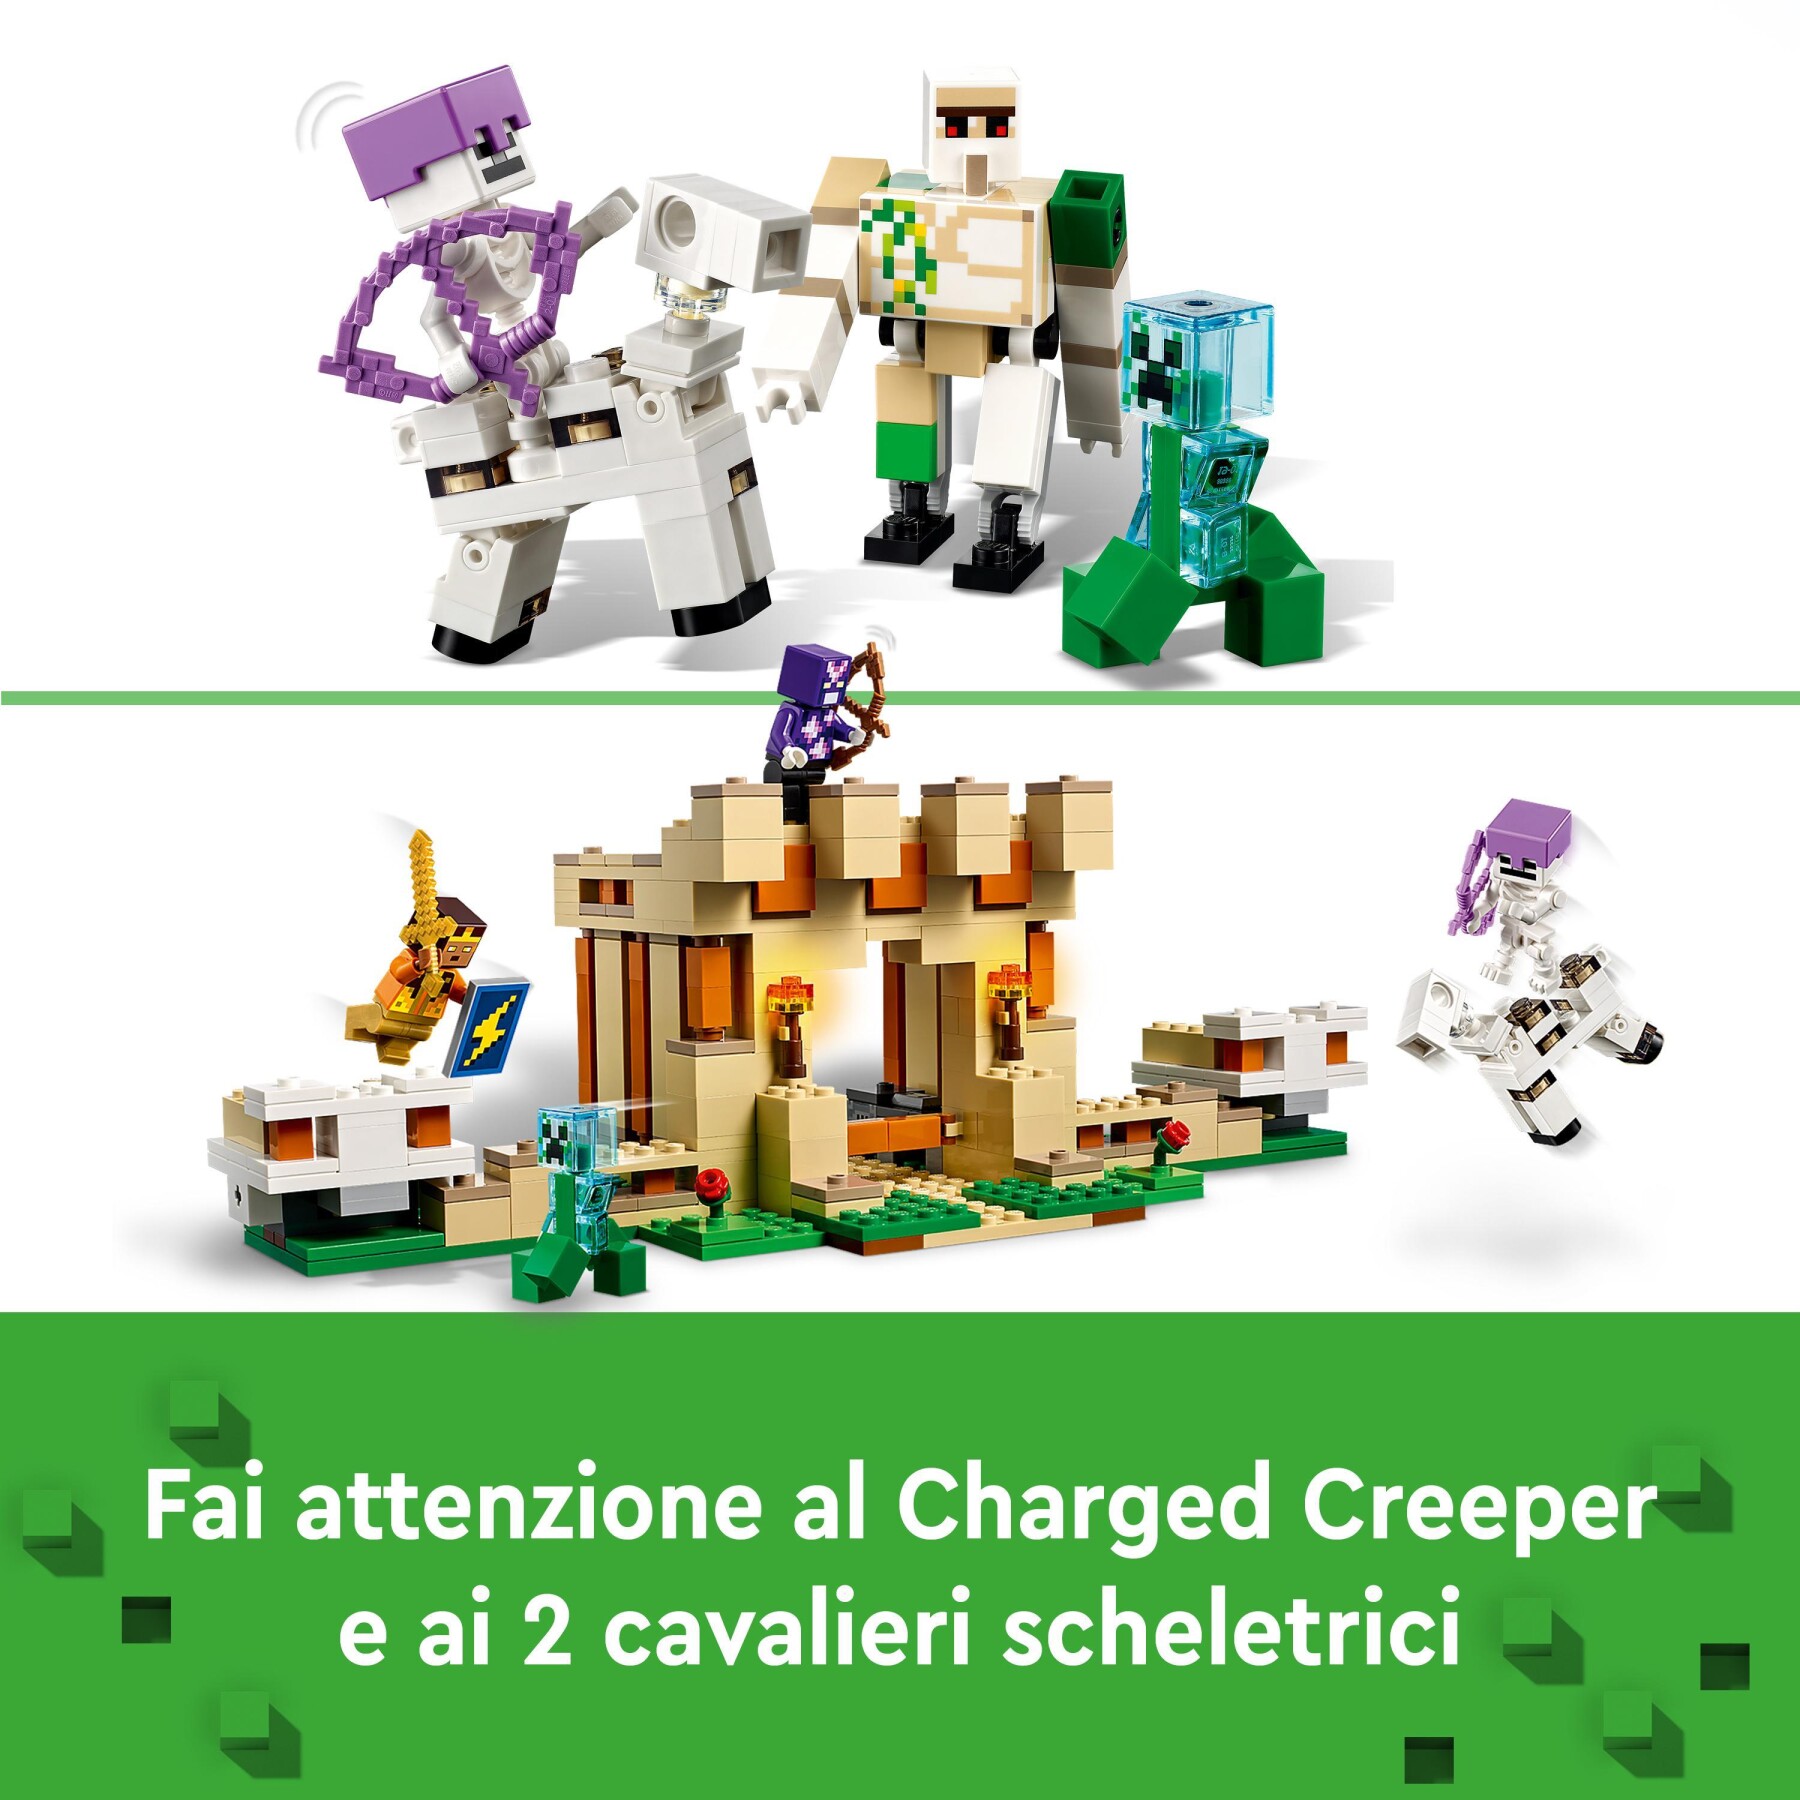 Lego 21250 minecraft la fortezza del golem di ferro, castello giocattolo costruibile che si trasforma in action figure, con 7 personaggi - MINECRAFT